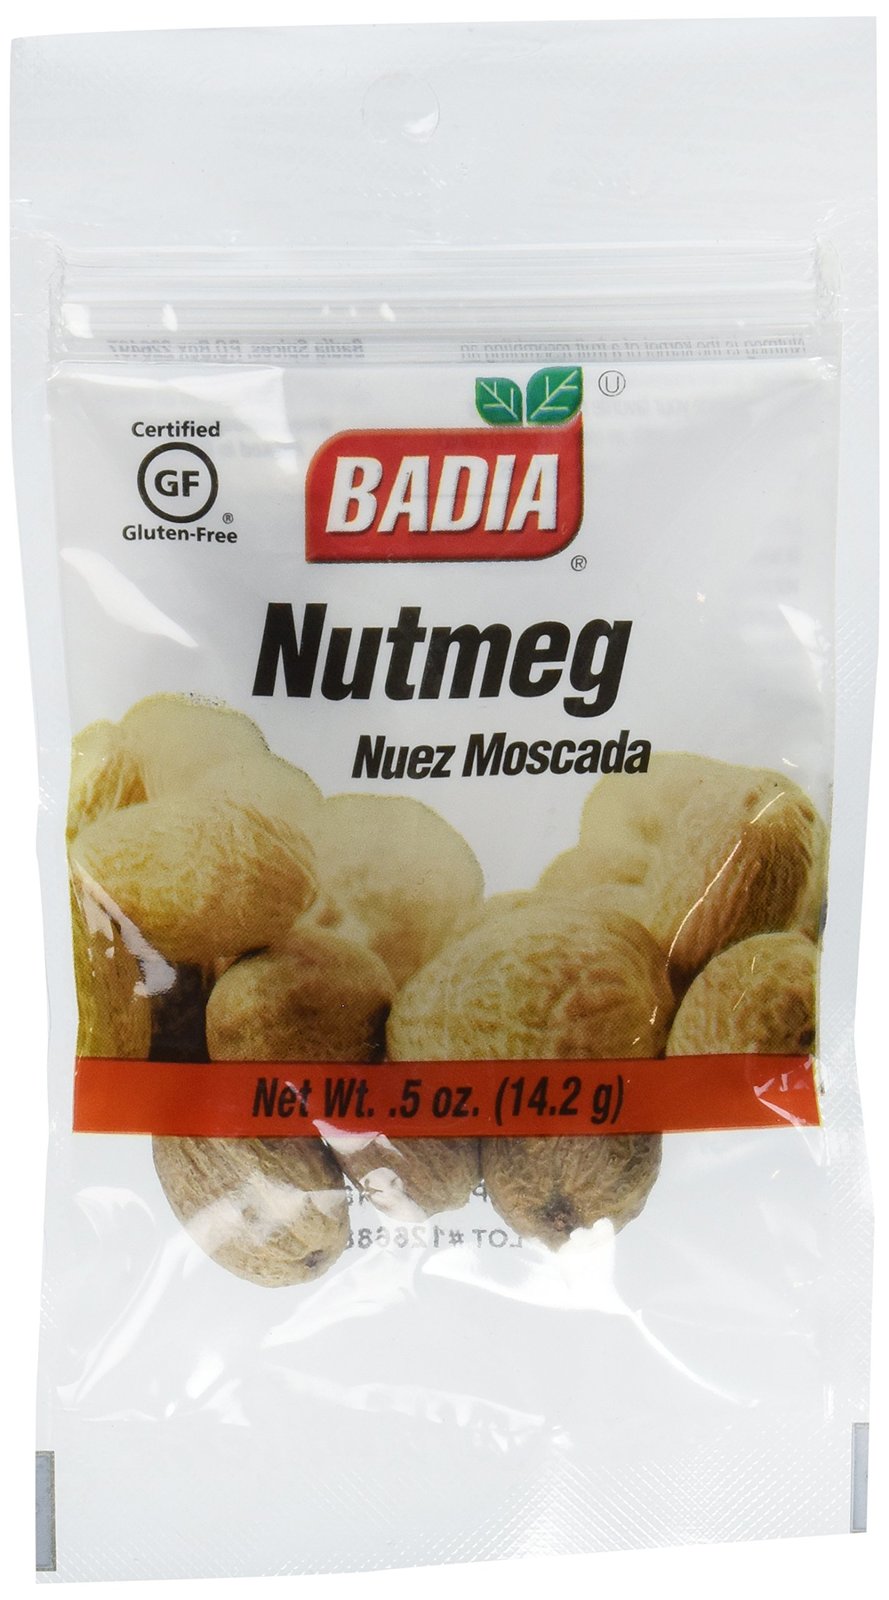 Badia Whole Nutmeg Net Wt. .5 oz (14.2g) - $6.88